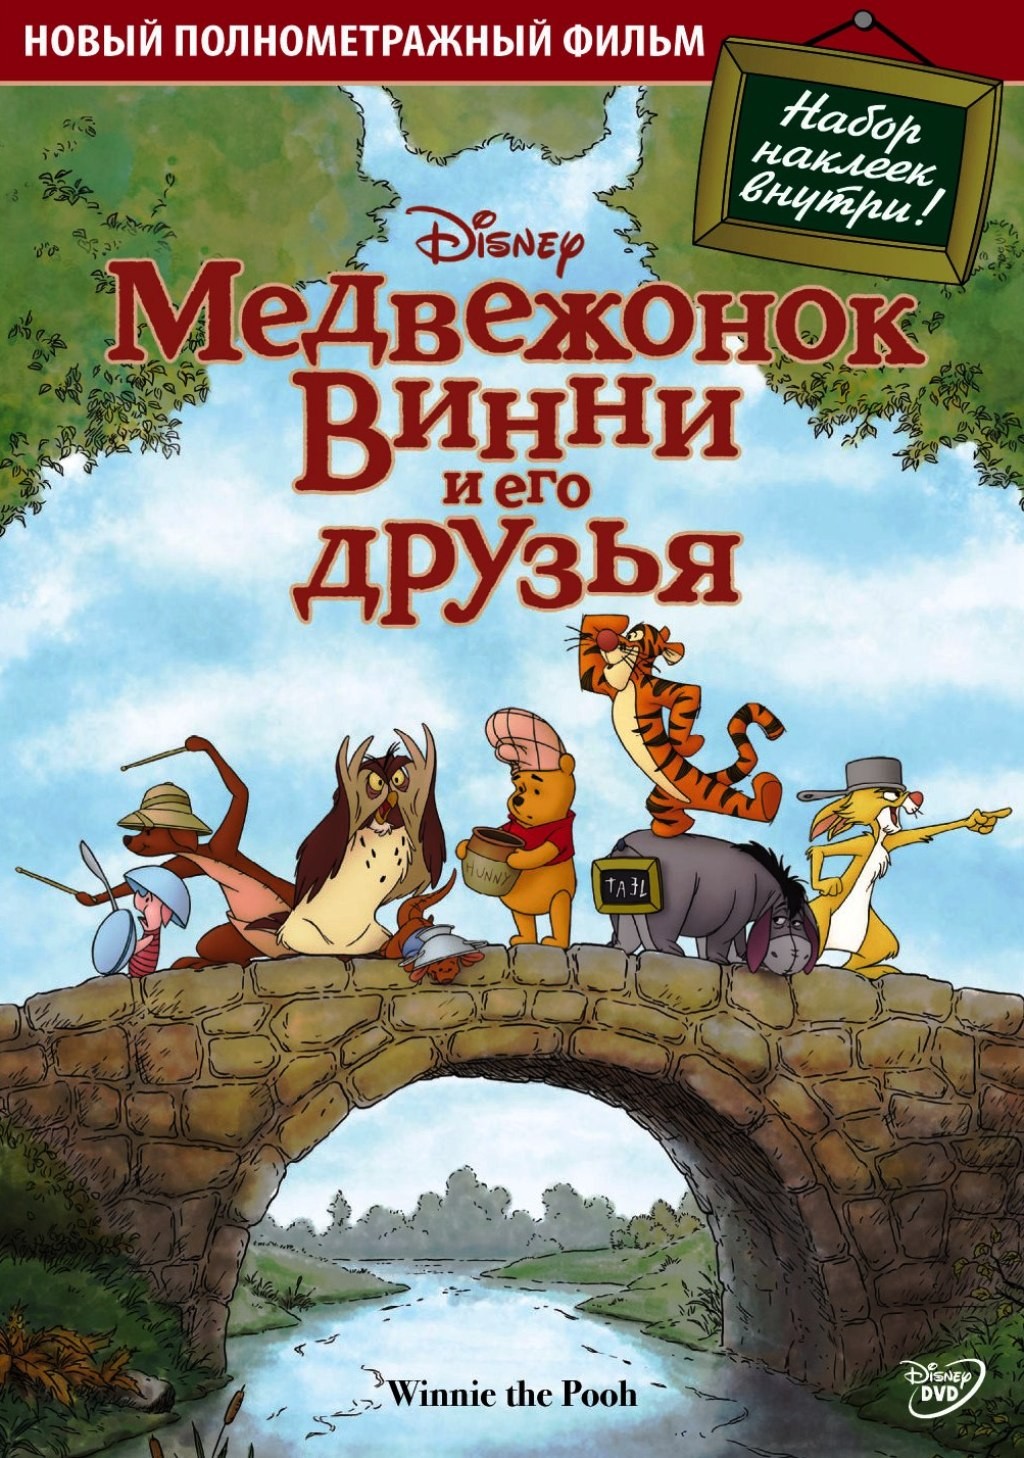 Медвежонок Винни и его друзья (DVD)